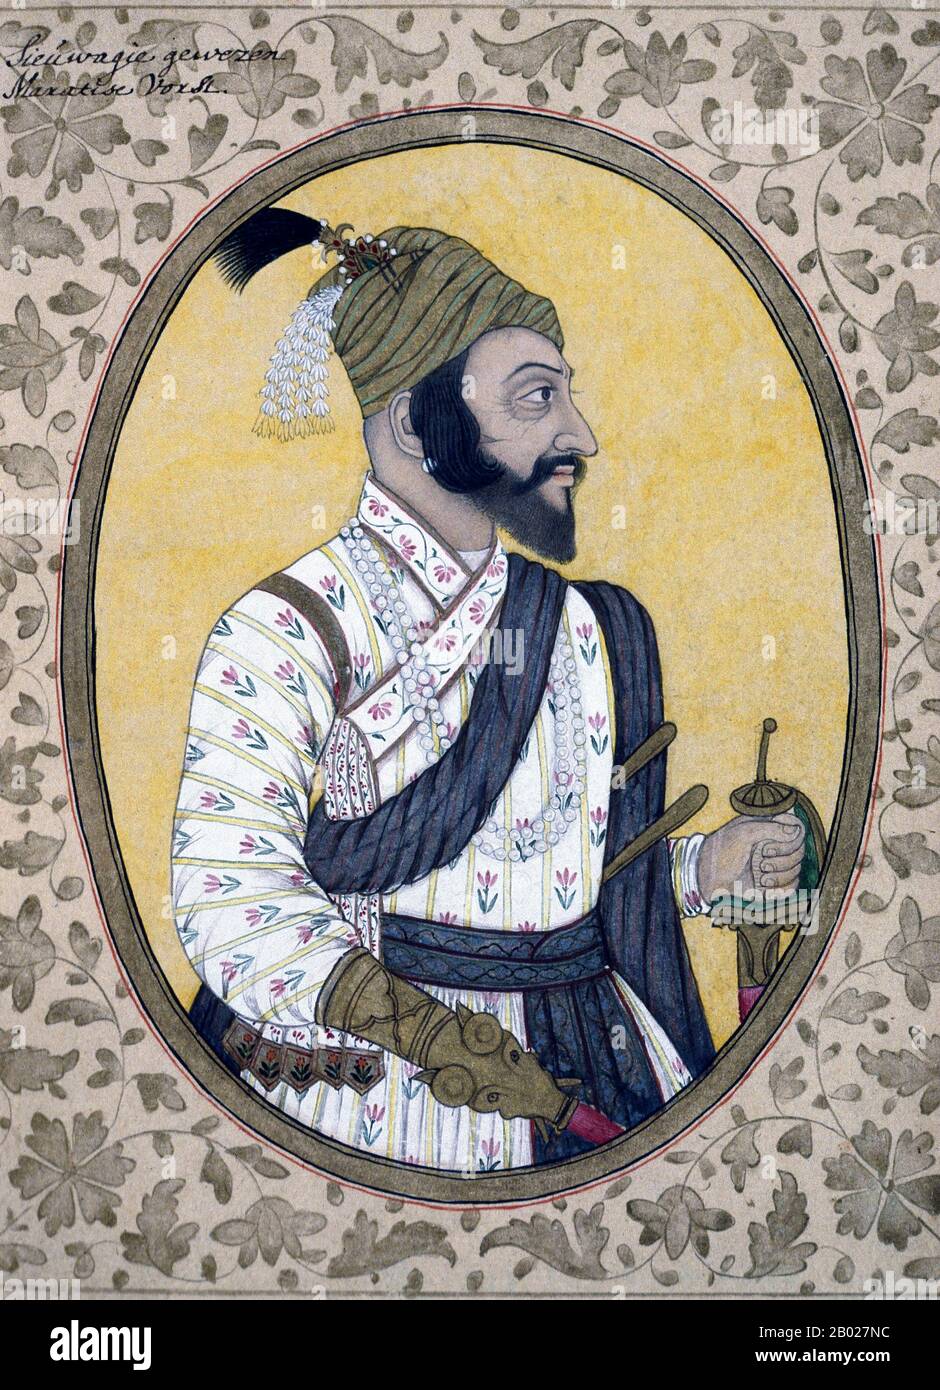 Inde : Portrait de Shivaji Bhonsle (19 février 1630 - 3 avril 1680), fondateur de l'Empire Maratha (1674 - 1820) c. 1685. L'Empire Maratha, qui a duré jusqu'en 1820, à son apogée couvrait une grande partie du sous-continent indien. Aristocrate du clan Bhonsle Maratha, Shivaji a dirigé une résistance contre le sultanat d'Adilshahi de Bijapur et l'Empire moghol et a établi Hindavi Swarajya ('règne elf du peuple hindou'). Il a créé un royaume de Maratha indépendant avec Raigad comme capitale, et a été couronné Chhatrapati ('souverain suprême') des Marathas en 1674. Banque D'Images